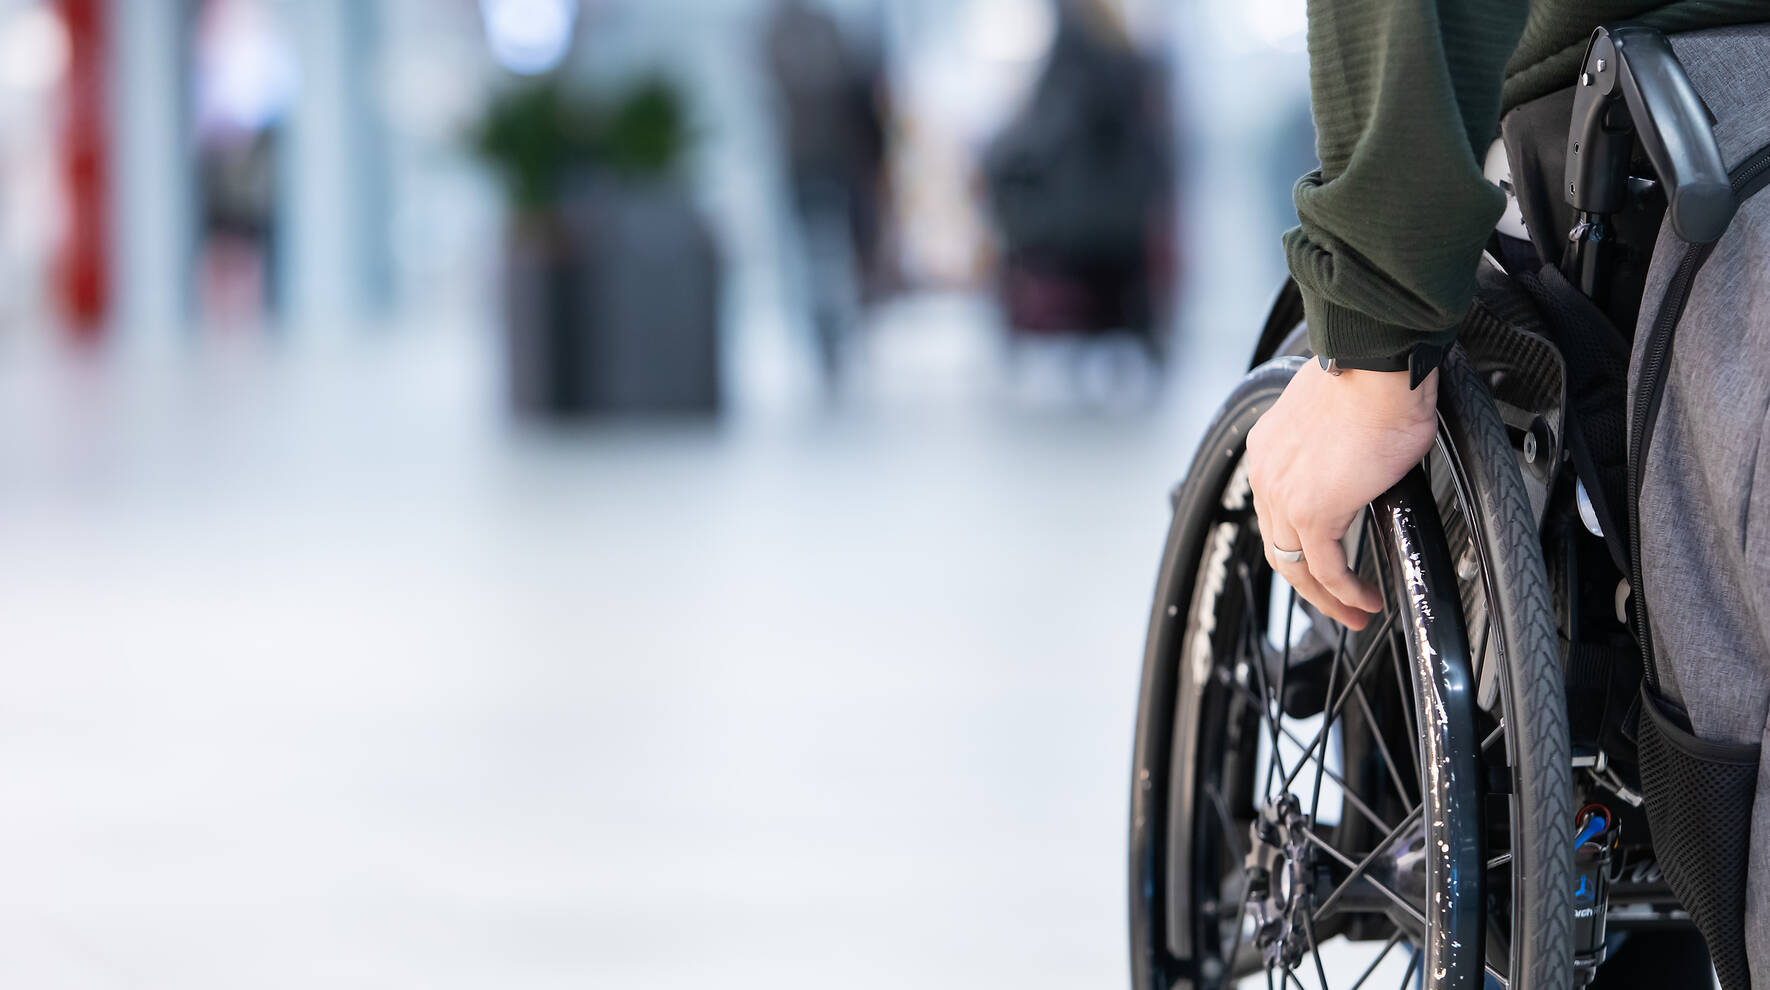 Kuvassa näkyy pyörätuolissa istuvan henkilön käsi ja pyörätuolin rengas. Taustalla on sumeana sairaalan käytävä.